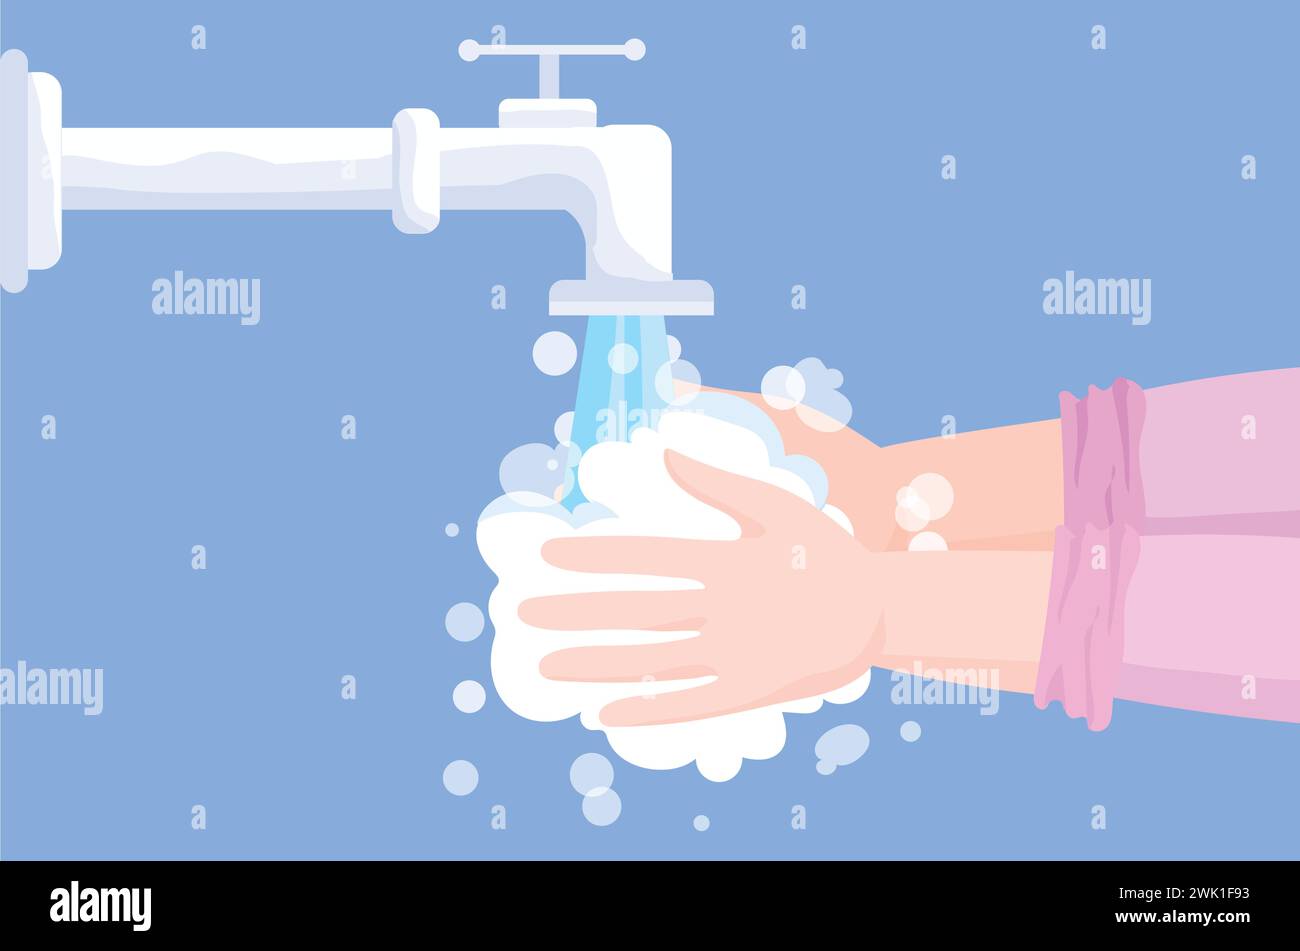 Illustrazione vettoriale del lavaggio delle mani sotto un rubinetto funzionante. Un paio di mani sono in sapone. Concetti di salute, cura della persona, pulizia e igiene. Illustrazione Vettoriale